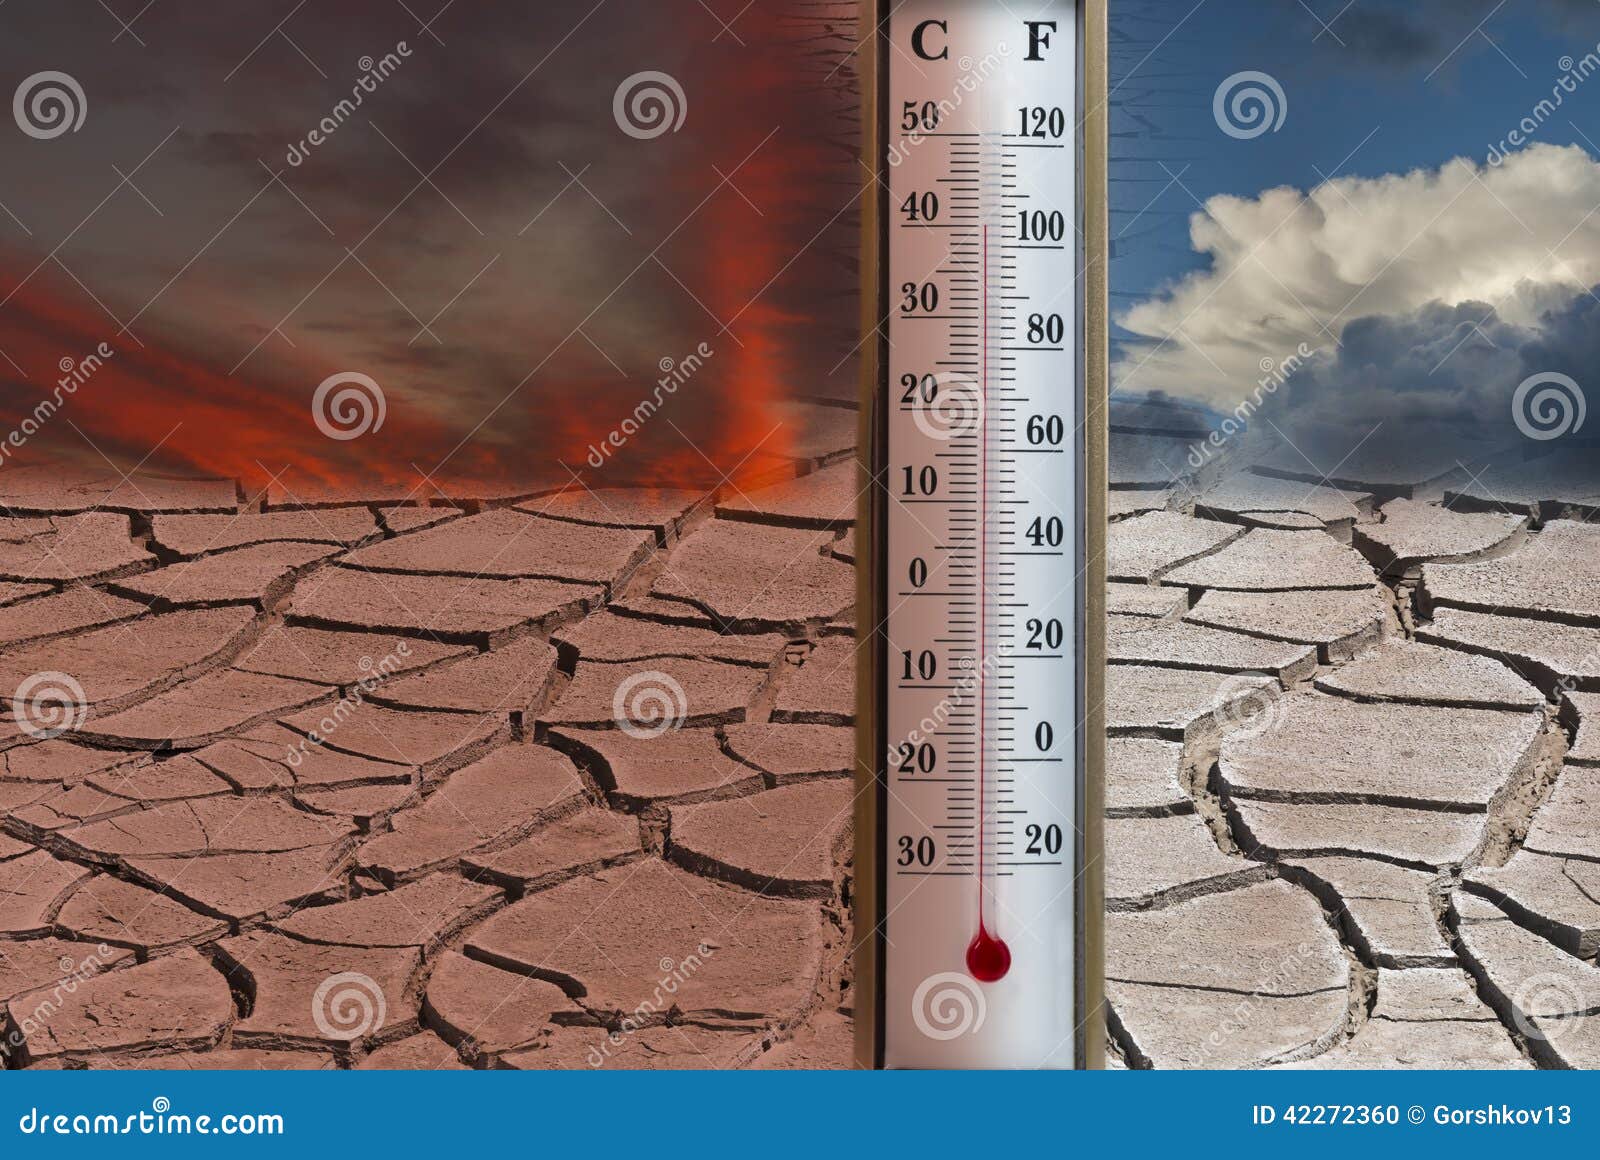 Сильный перепад температур. Повышение температуры земли. Высокая температура. Изменение климата на планете. Изучение изменения климата.